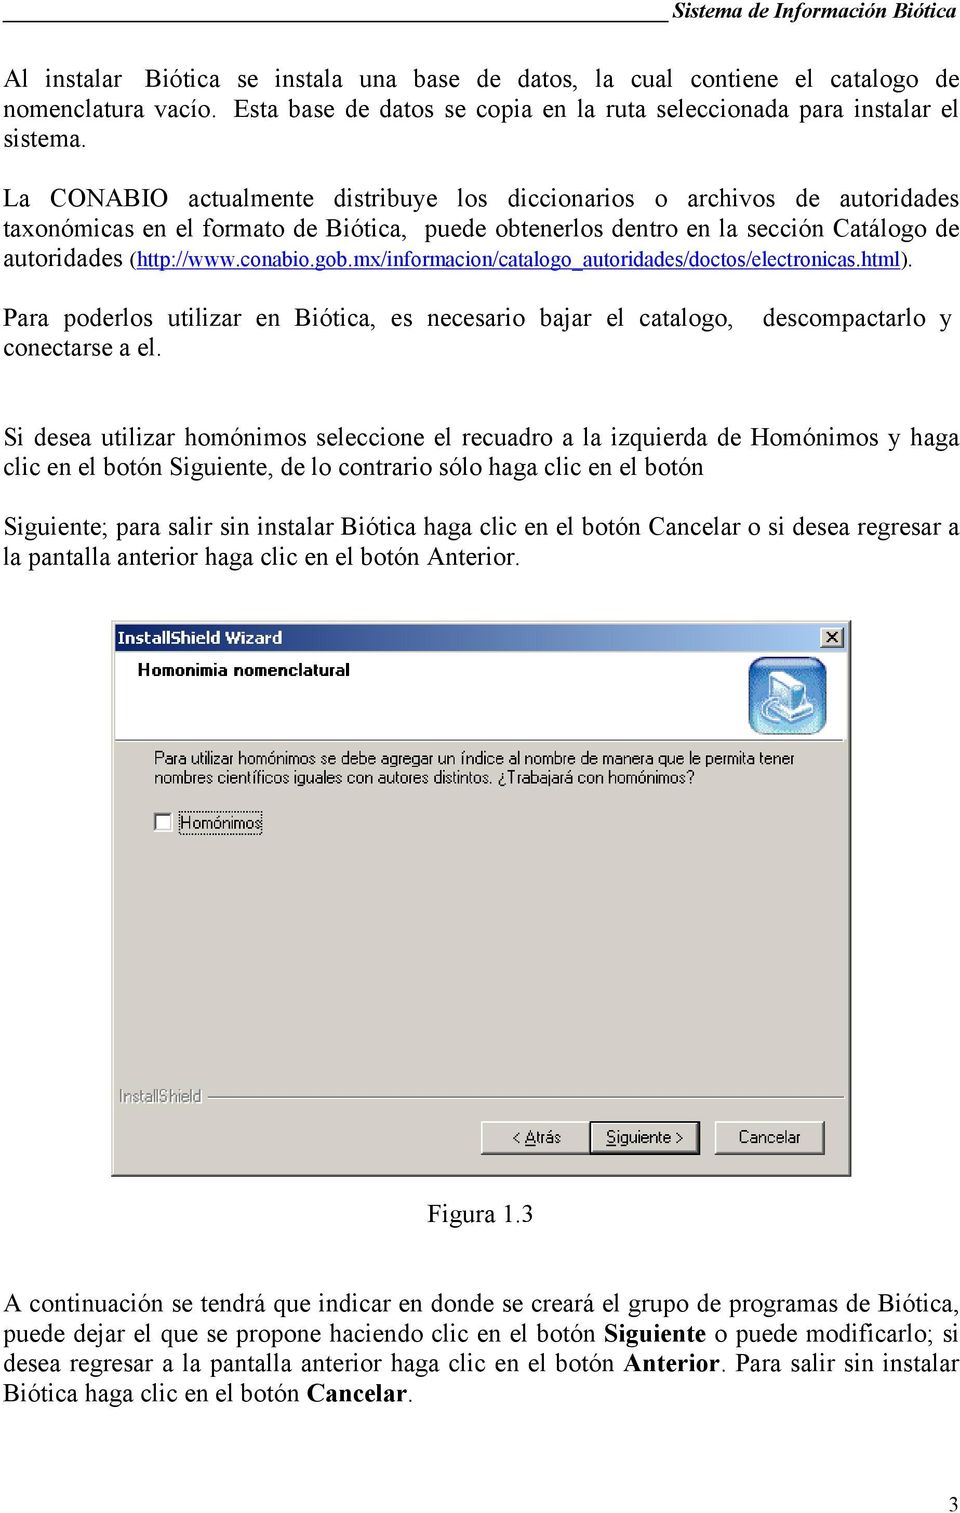 La CONABIO actualmente distribuye los diccionarios o archivos de autoridades taxonómicas en el formato de Biótica, puede obtenerlos dentro en la sección Catálogo de autoridades (http://www.conabio.